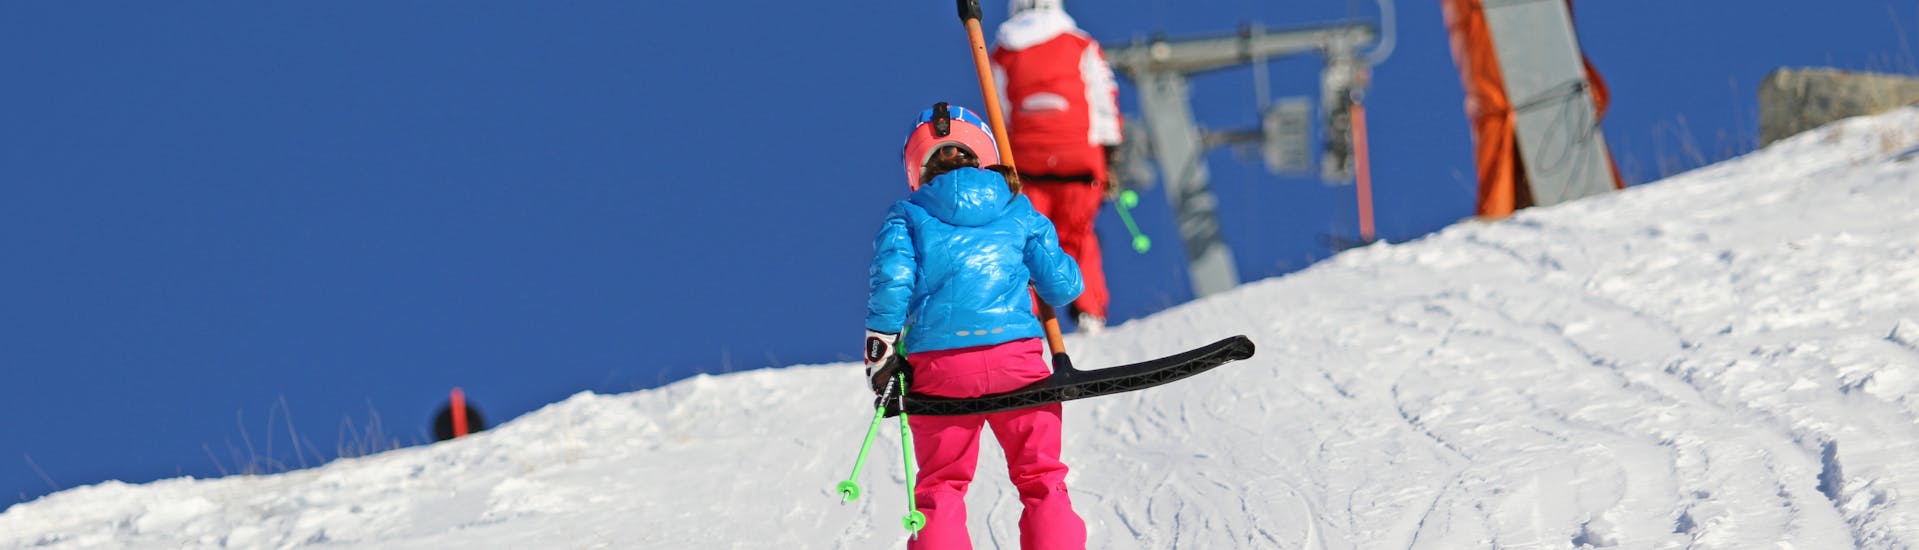 Cours de ski Enfants (4-7 ans) pour Skieurs Expérimentés - Nauders.